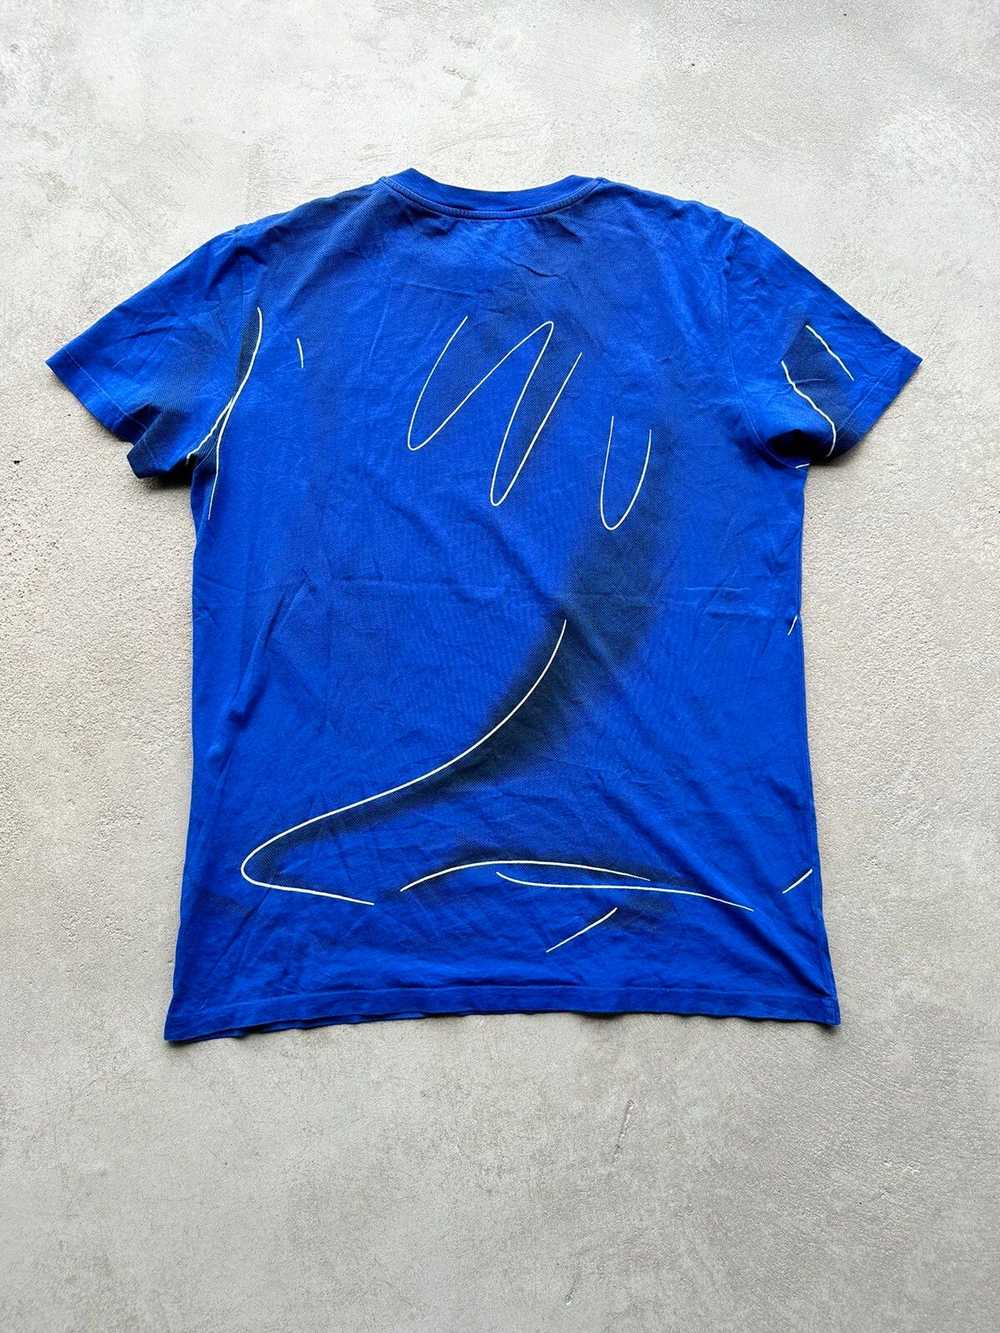 Jeremy Scott × Moschino Moschino Couture Tshirt - image 2